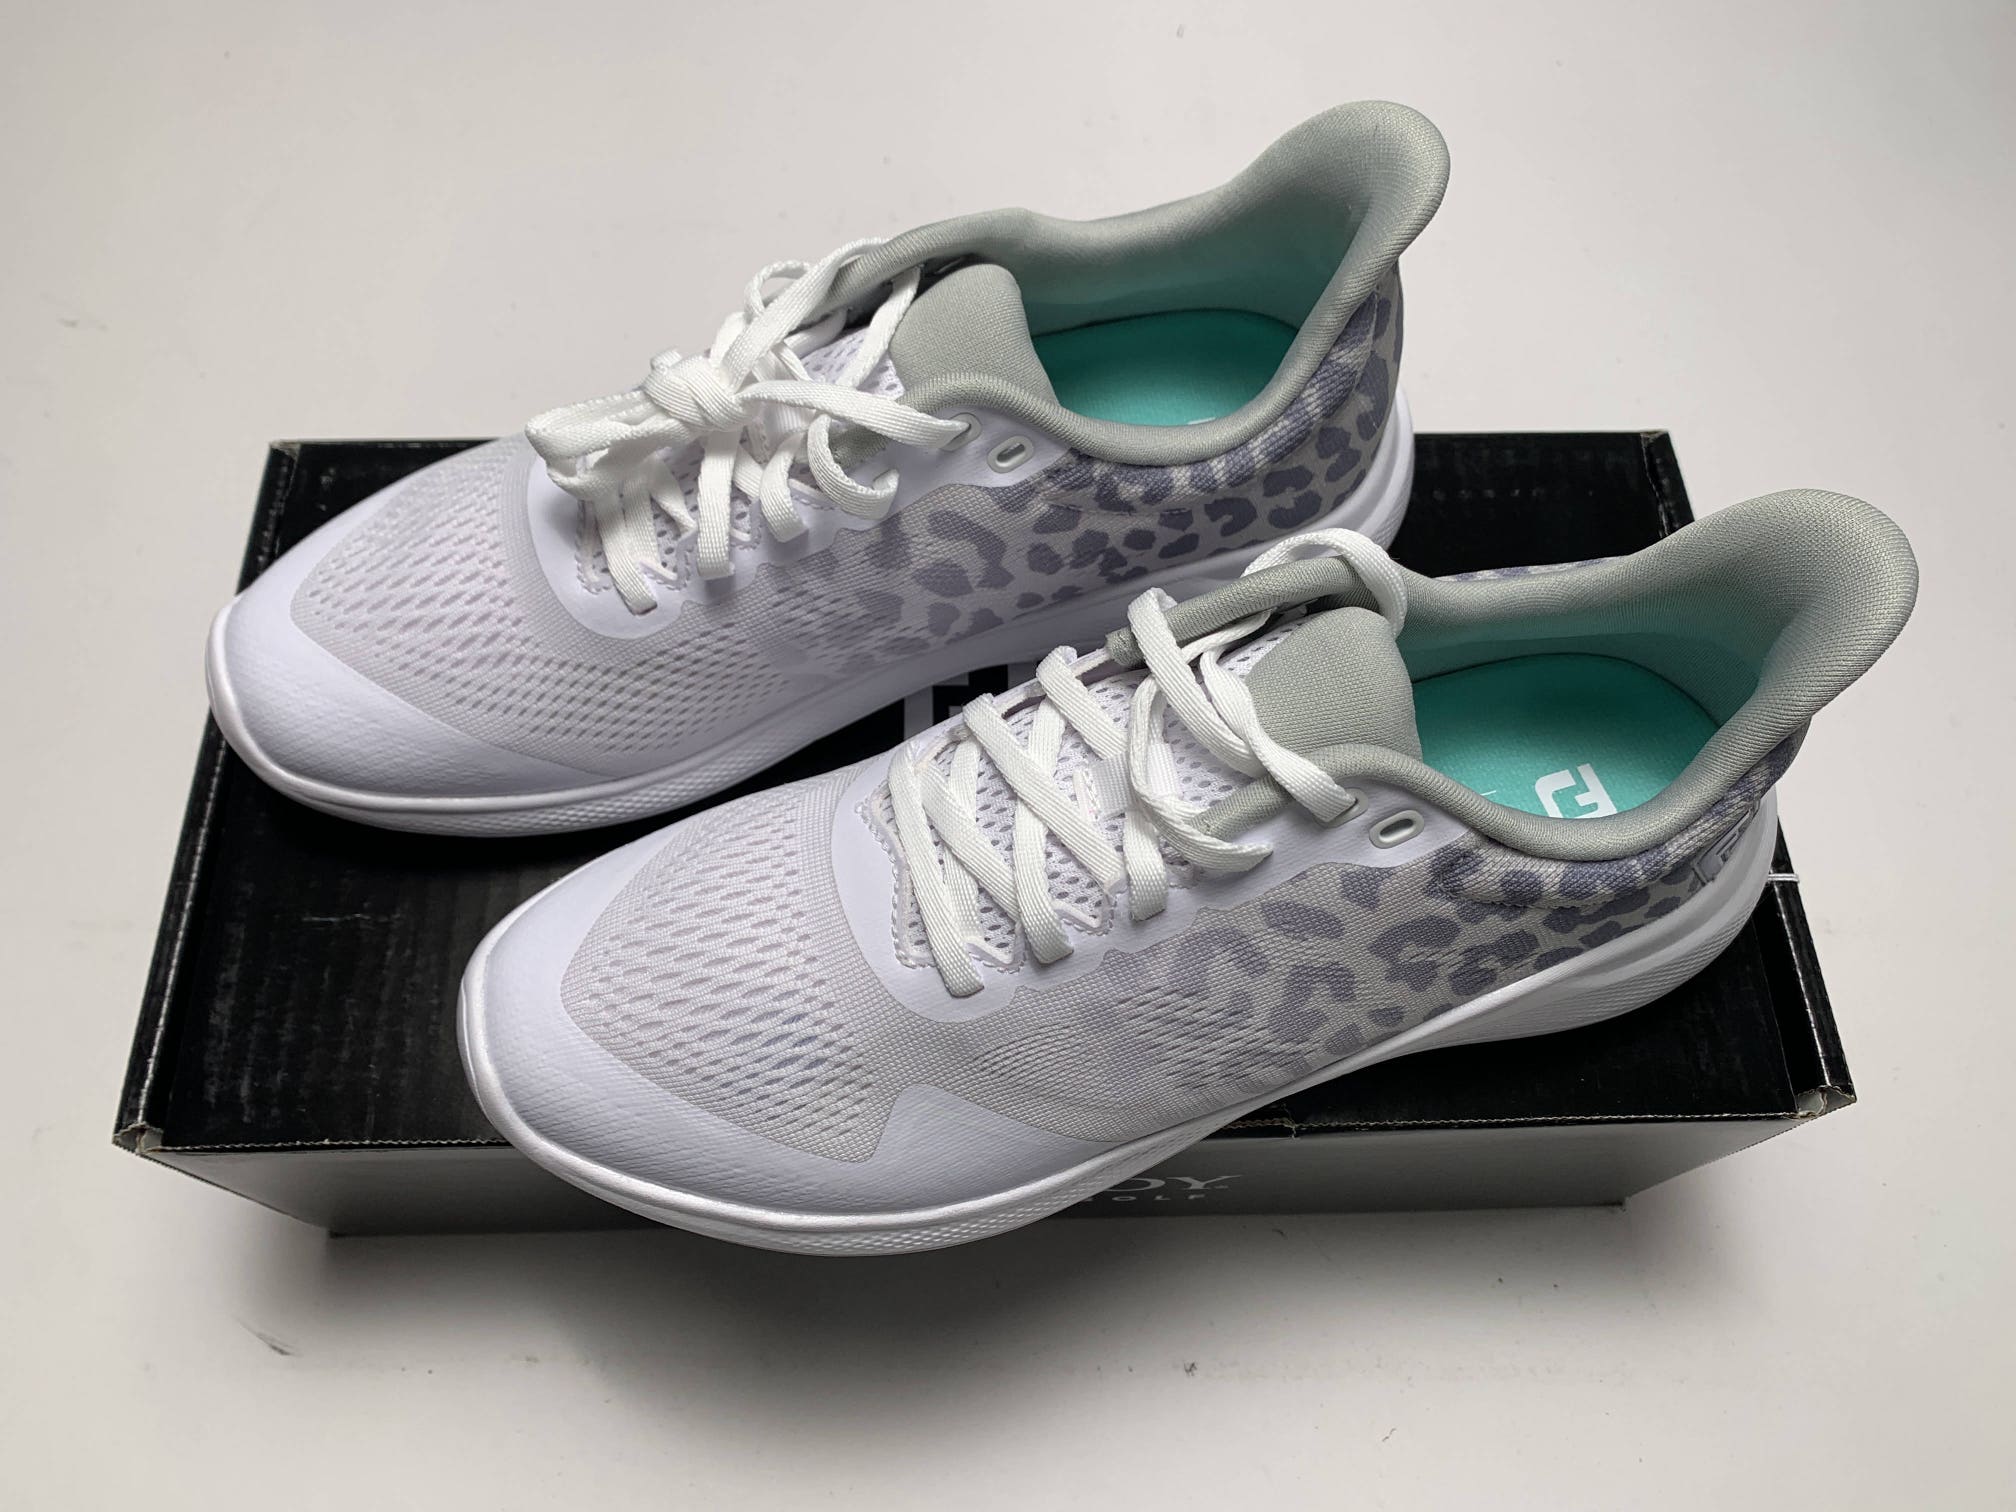 FootJoy FJ Flex Golf Shoes White Gray Women's SZ 7.5 (95767)